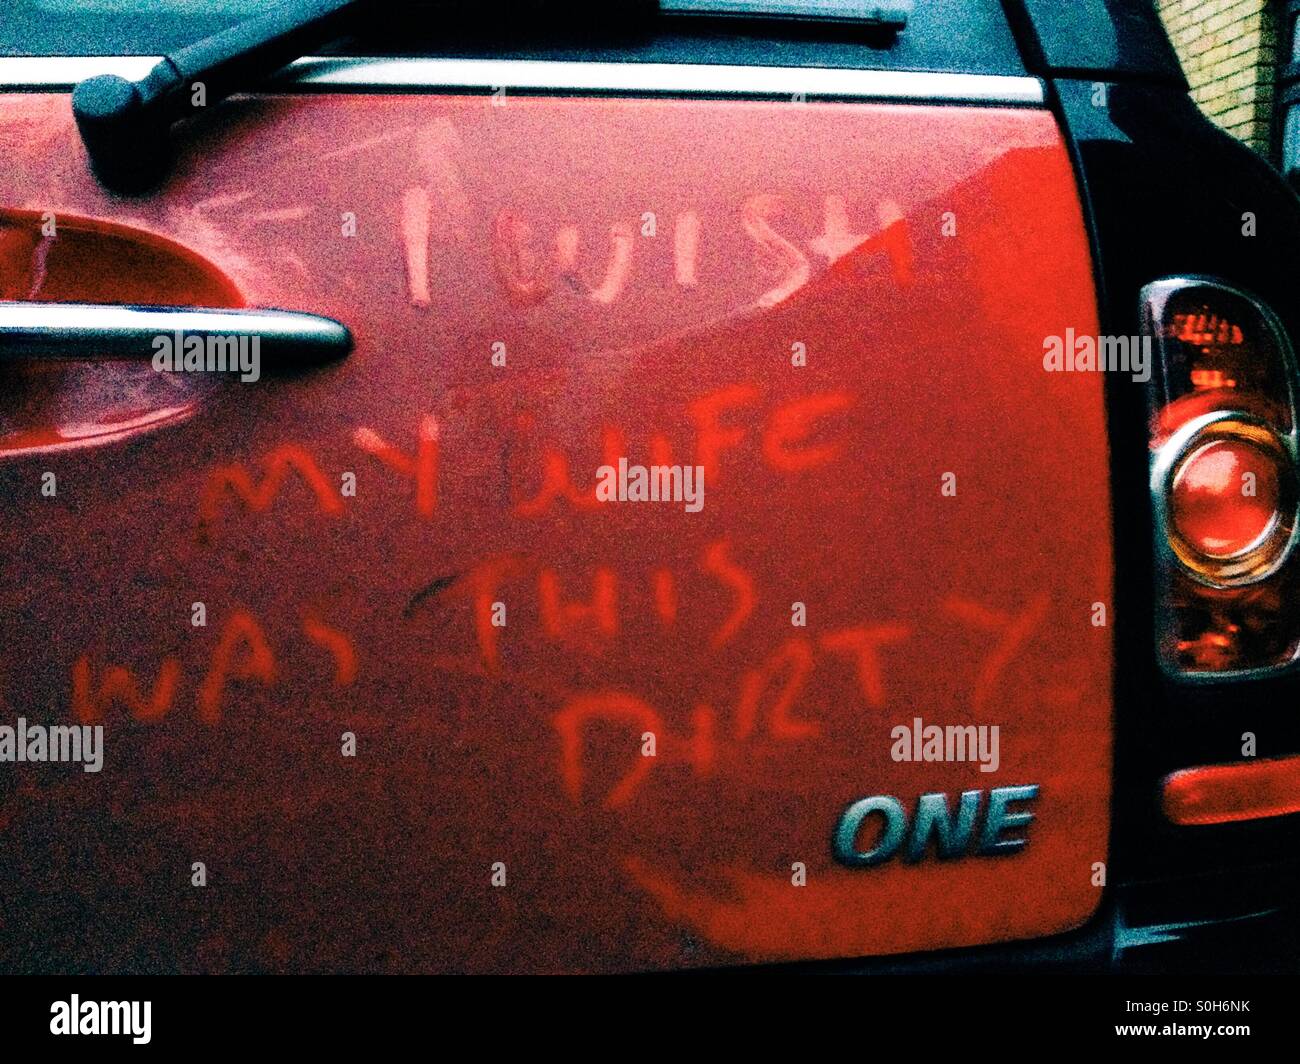 'J'aimerais que ma femme était cette sale' chauds graffitis dans une voiture sale's dirt Banque D'Images